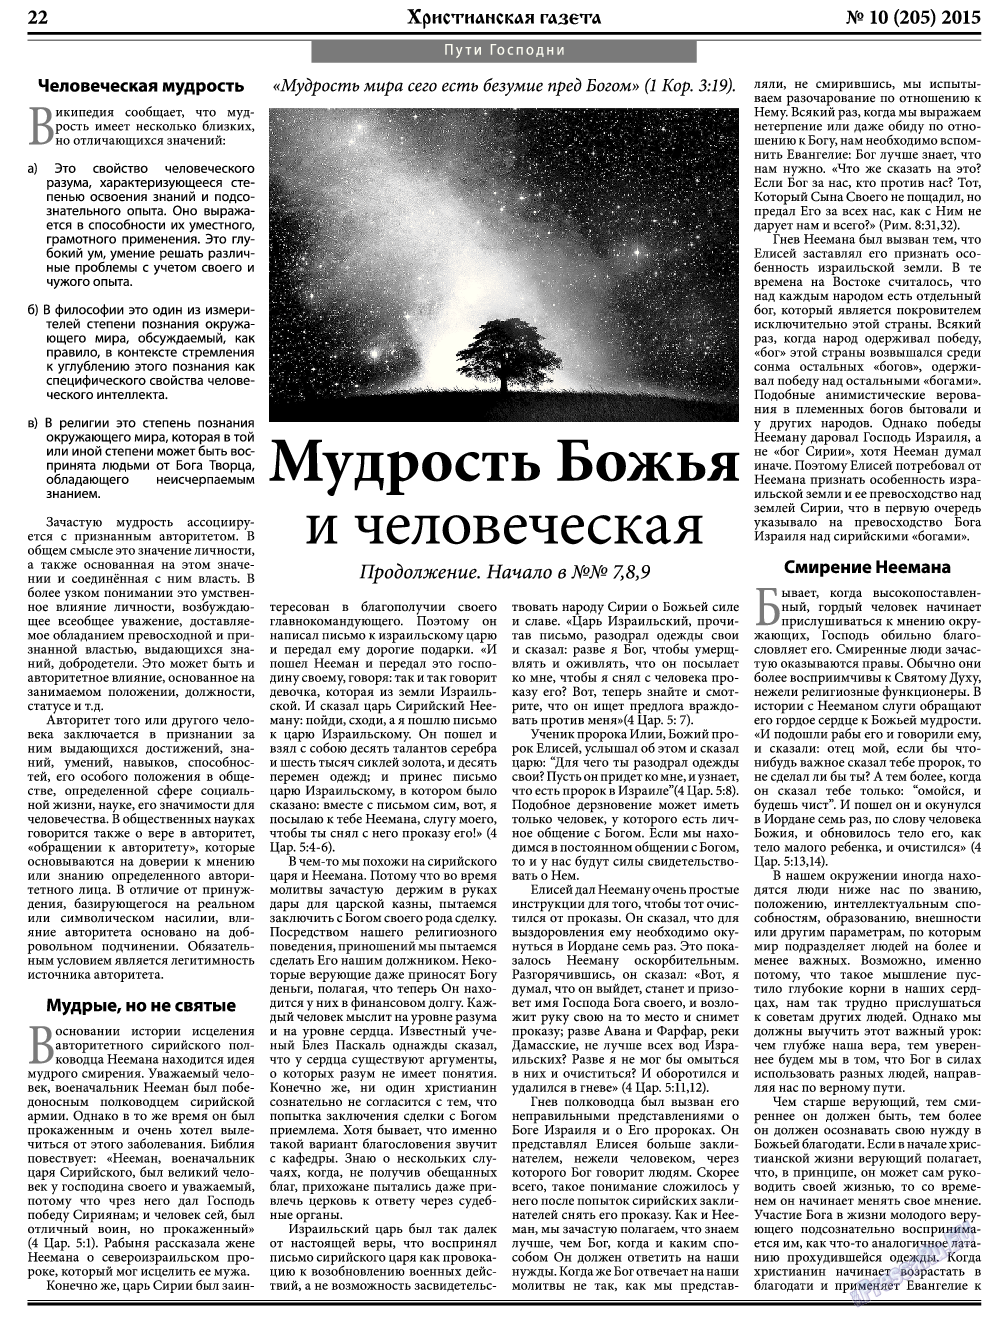 Христианская газета, газета. 2015 №10 стр.30